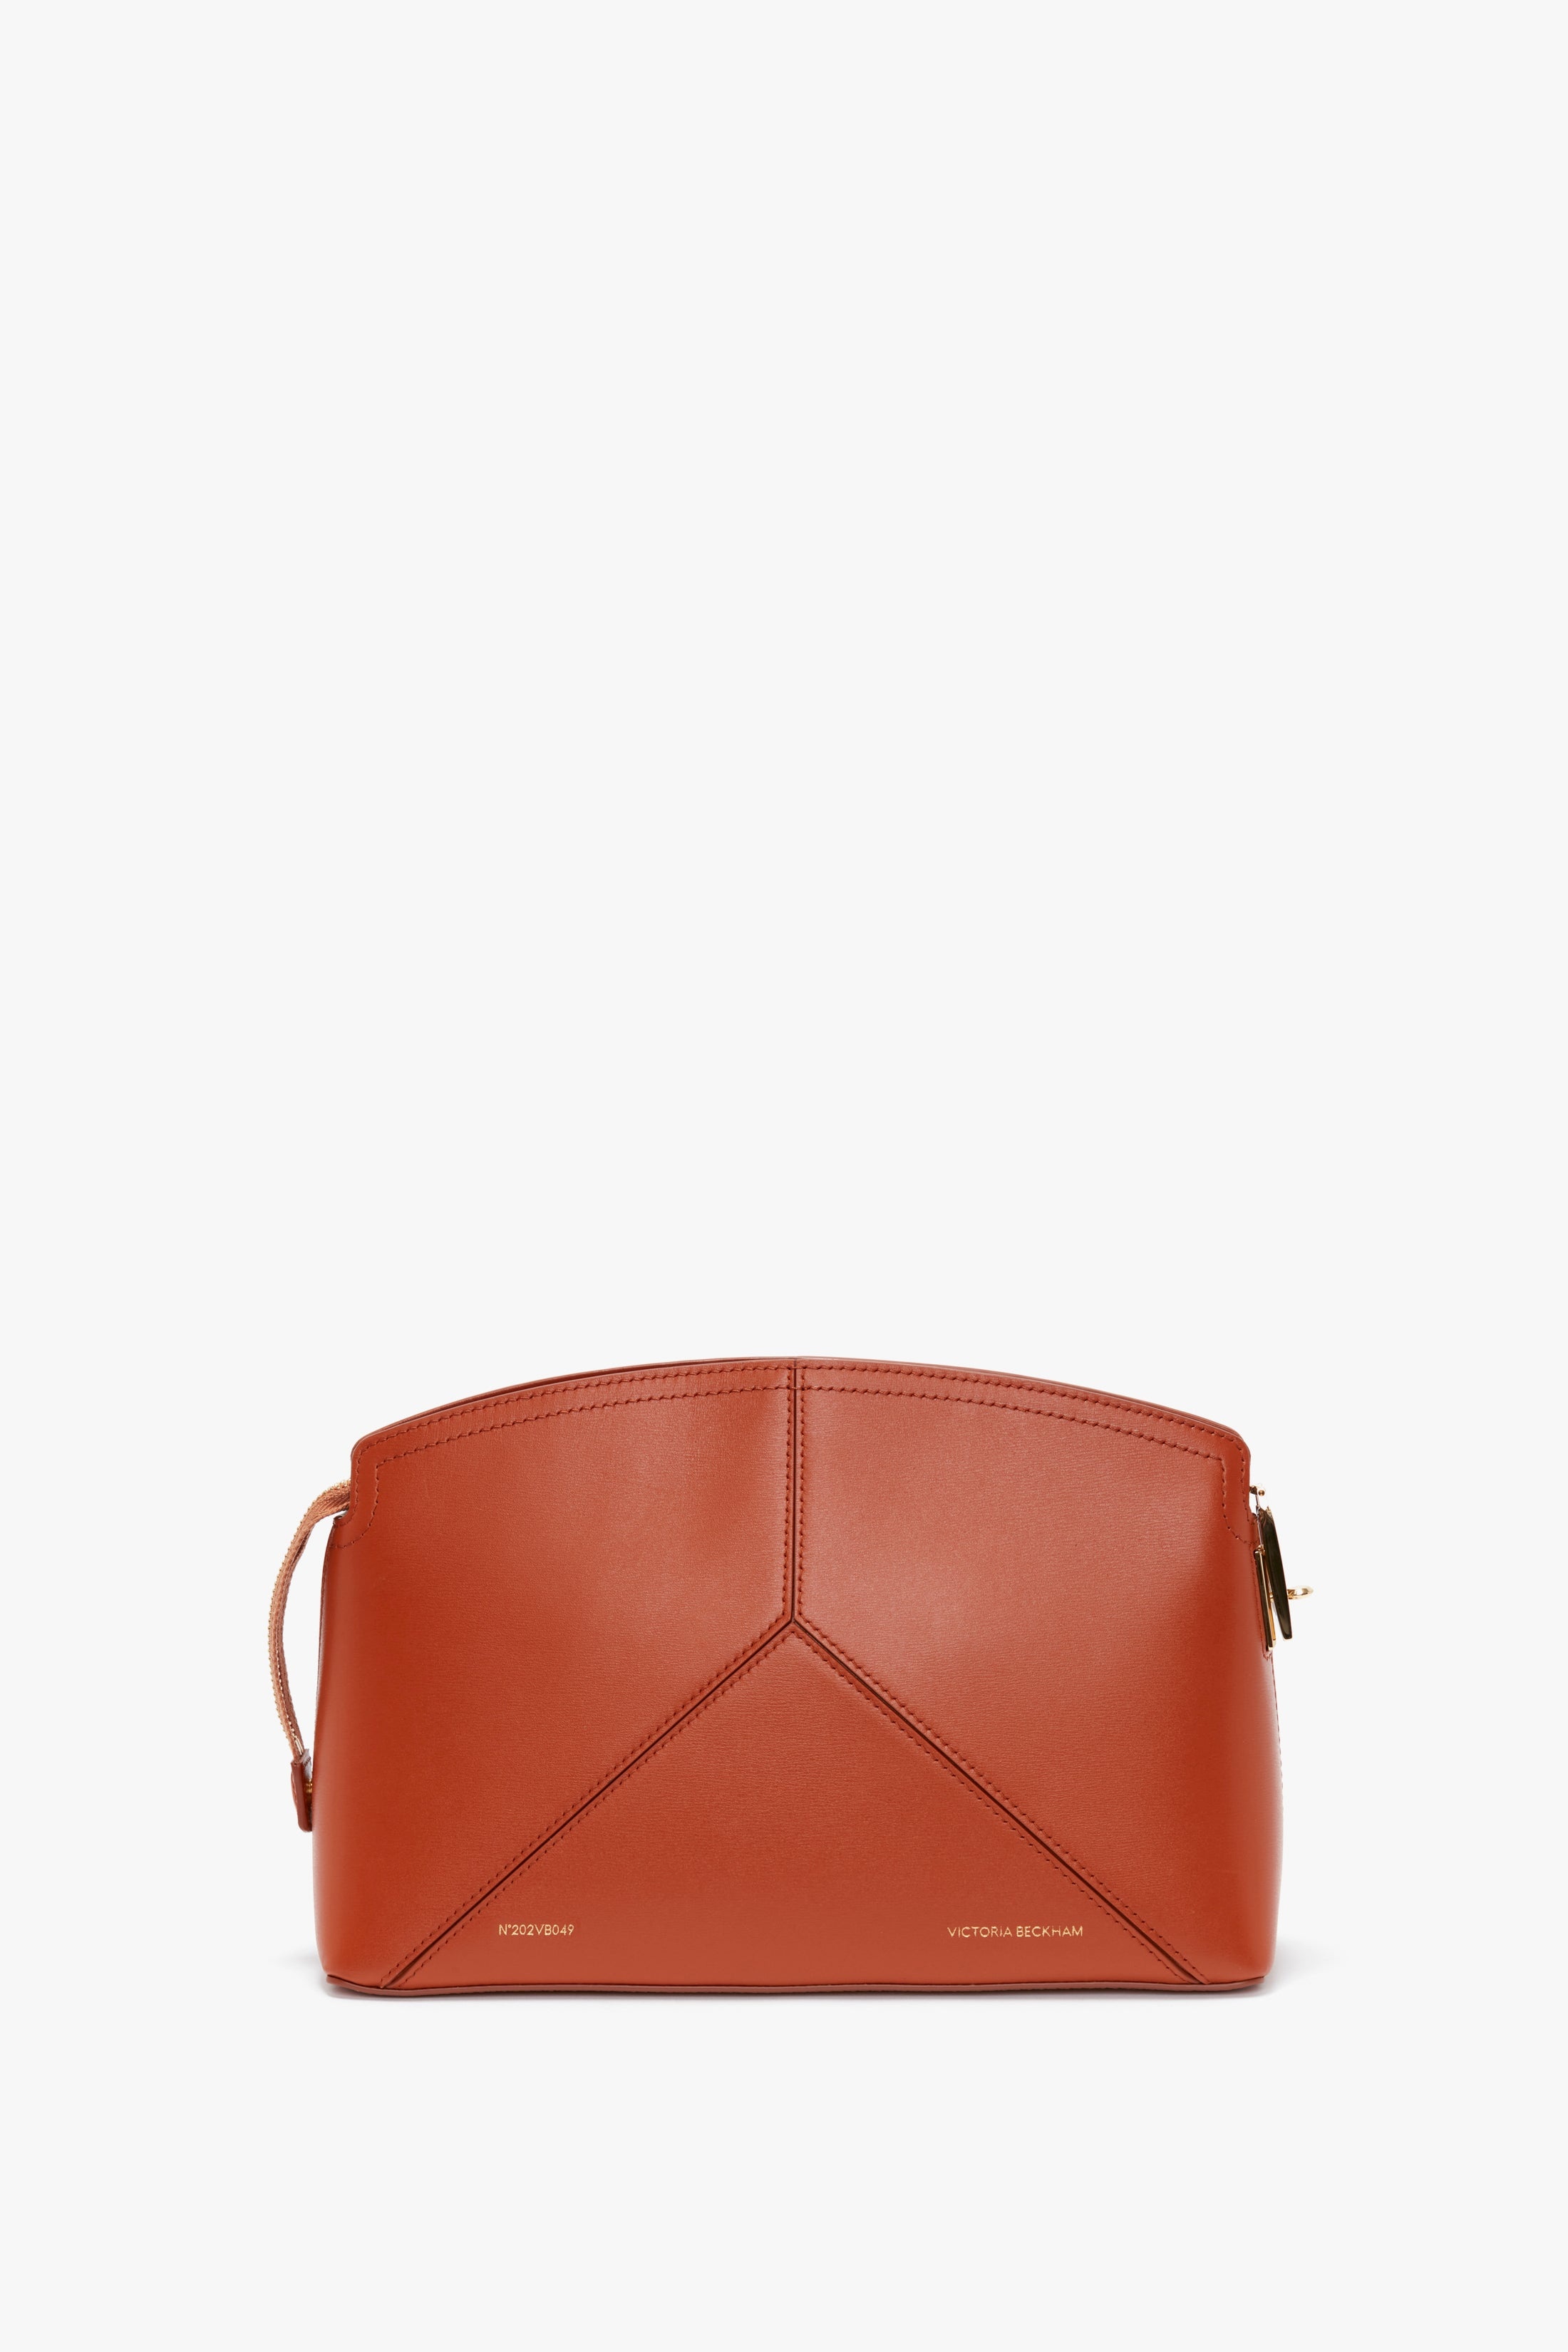 Victoria Clutch Bag In Tan Leather - 1